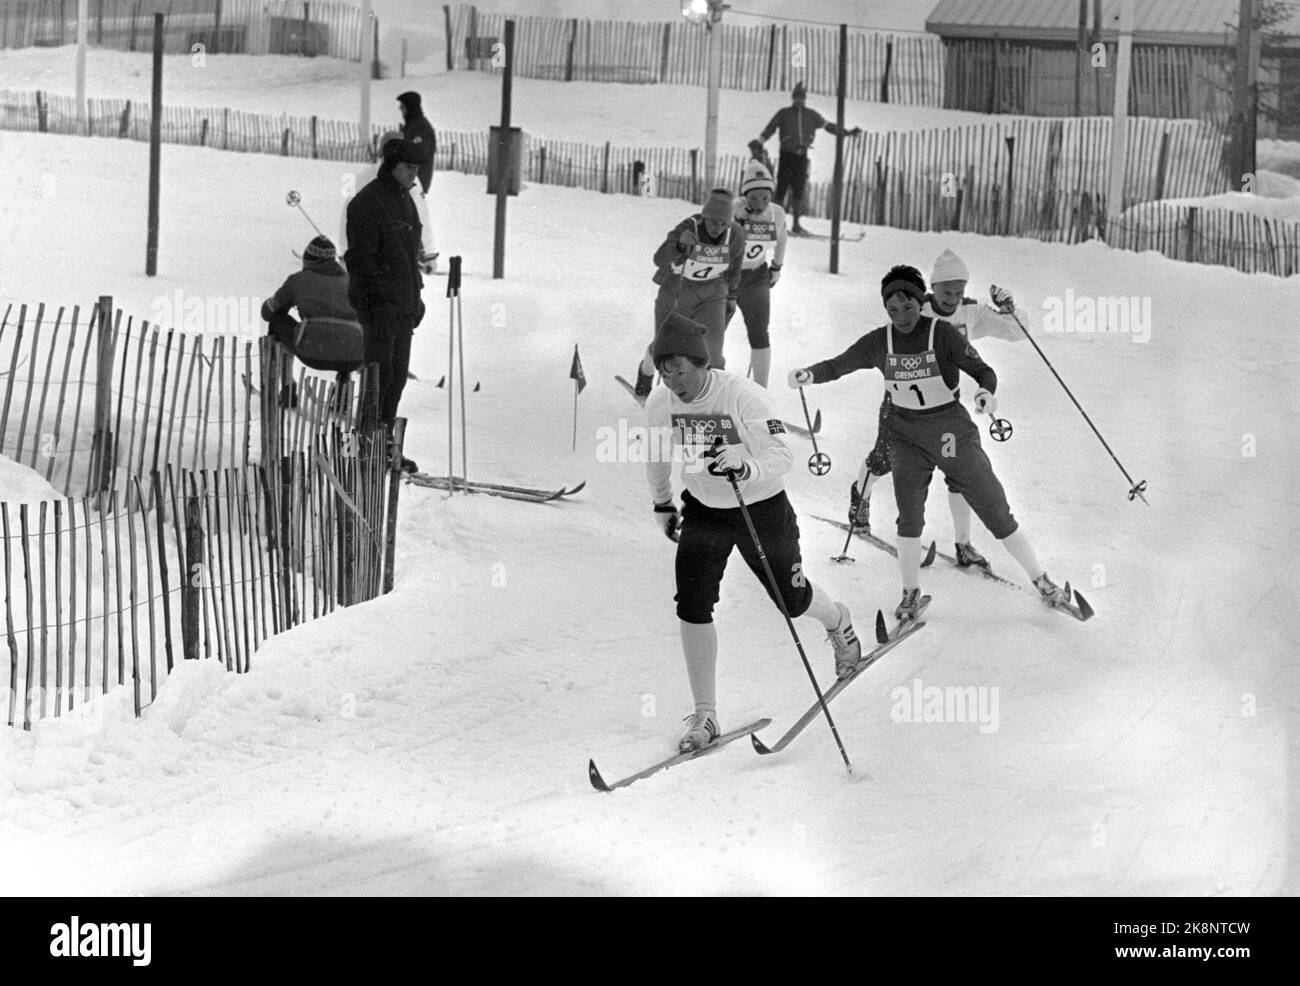 Grenoble, Frankreich 196802 Olympische Winterspiele in Grenoble. Langlauf, 3 x 5 km Staffel, Damen. Gold für das norwegische Team. Hier vom spannenden Lauf. Inger Aufles ist auf der ersten Etappe der erste in der Strecke. Foto: NTB / NTB Stockfoto